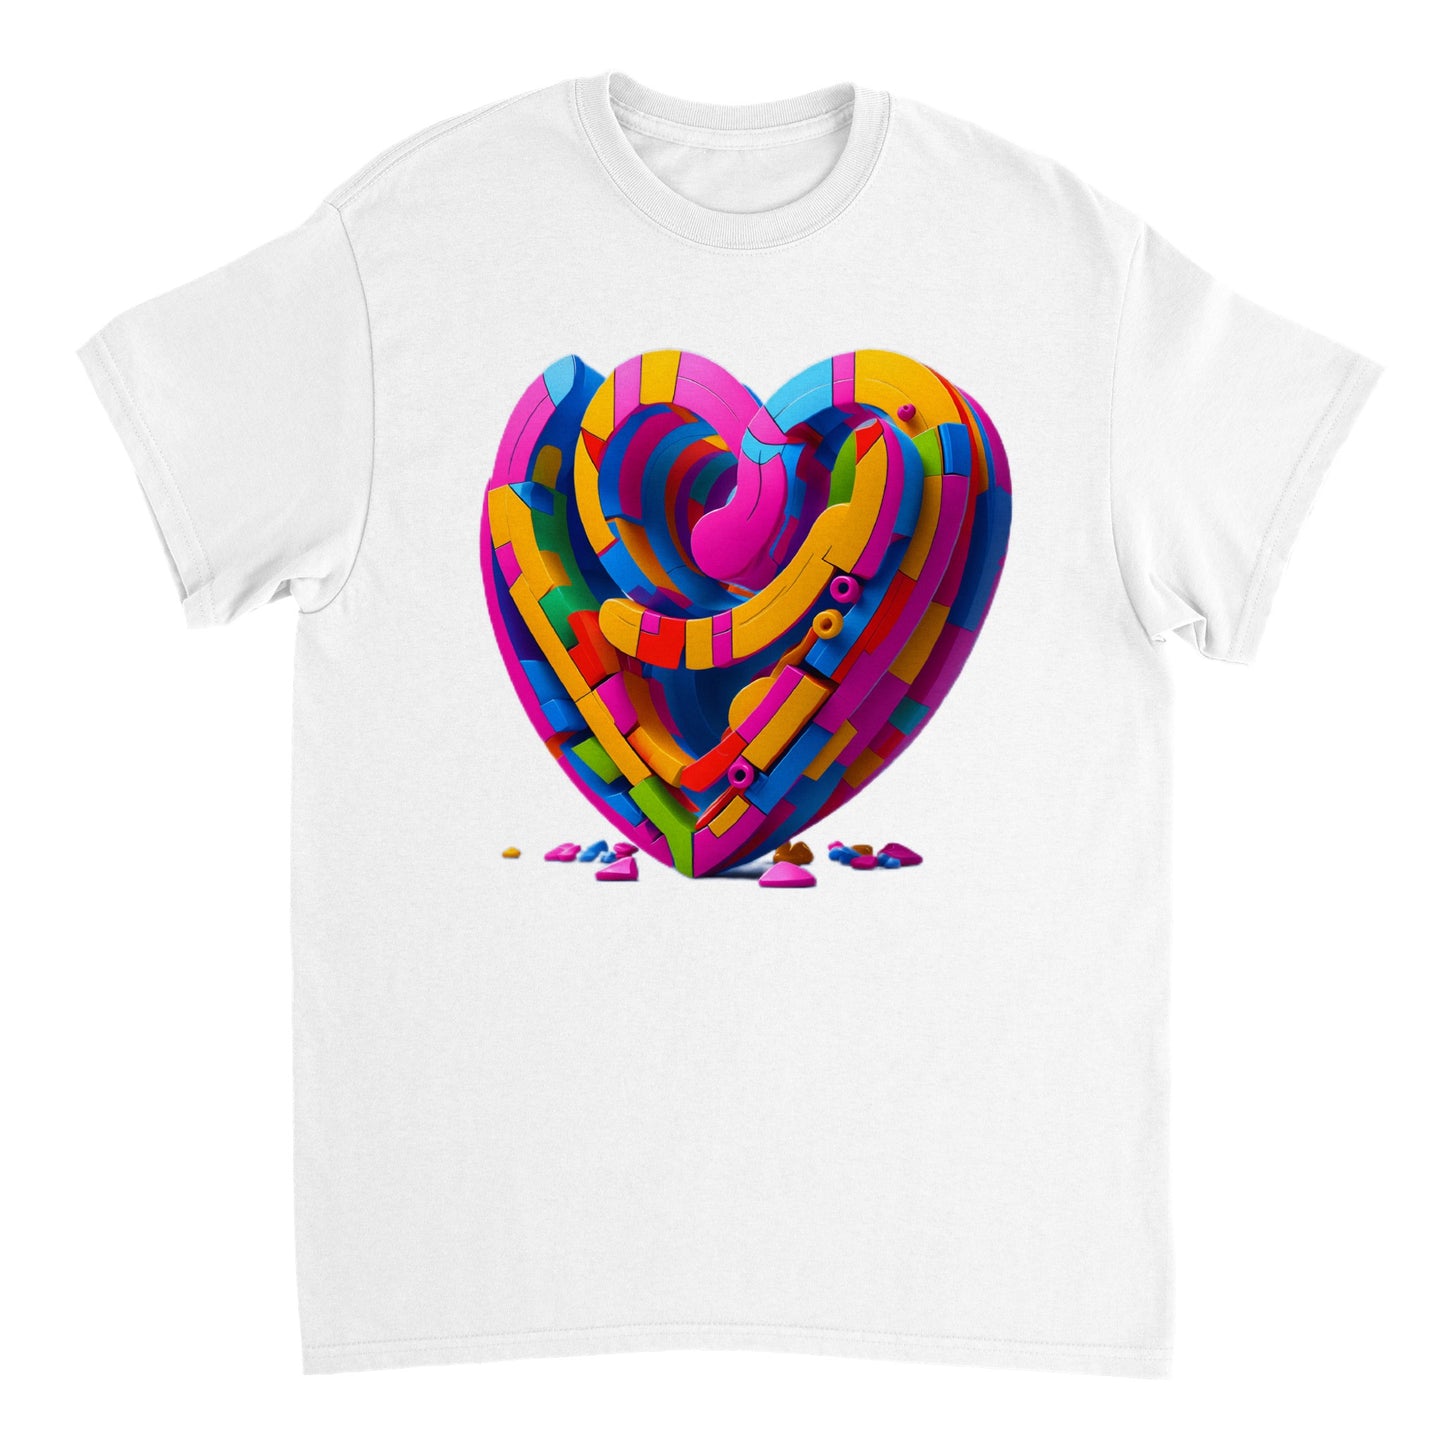 Love Heart - Heavyweight Unisex Crewneck T-shirt 19